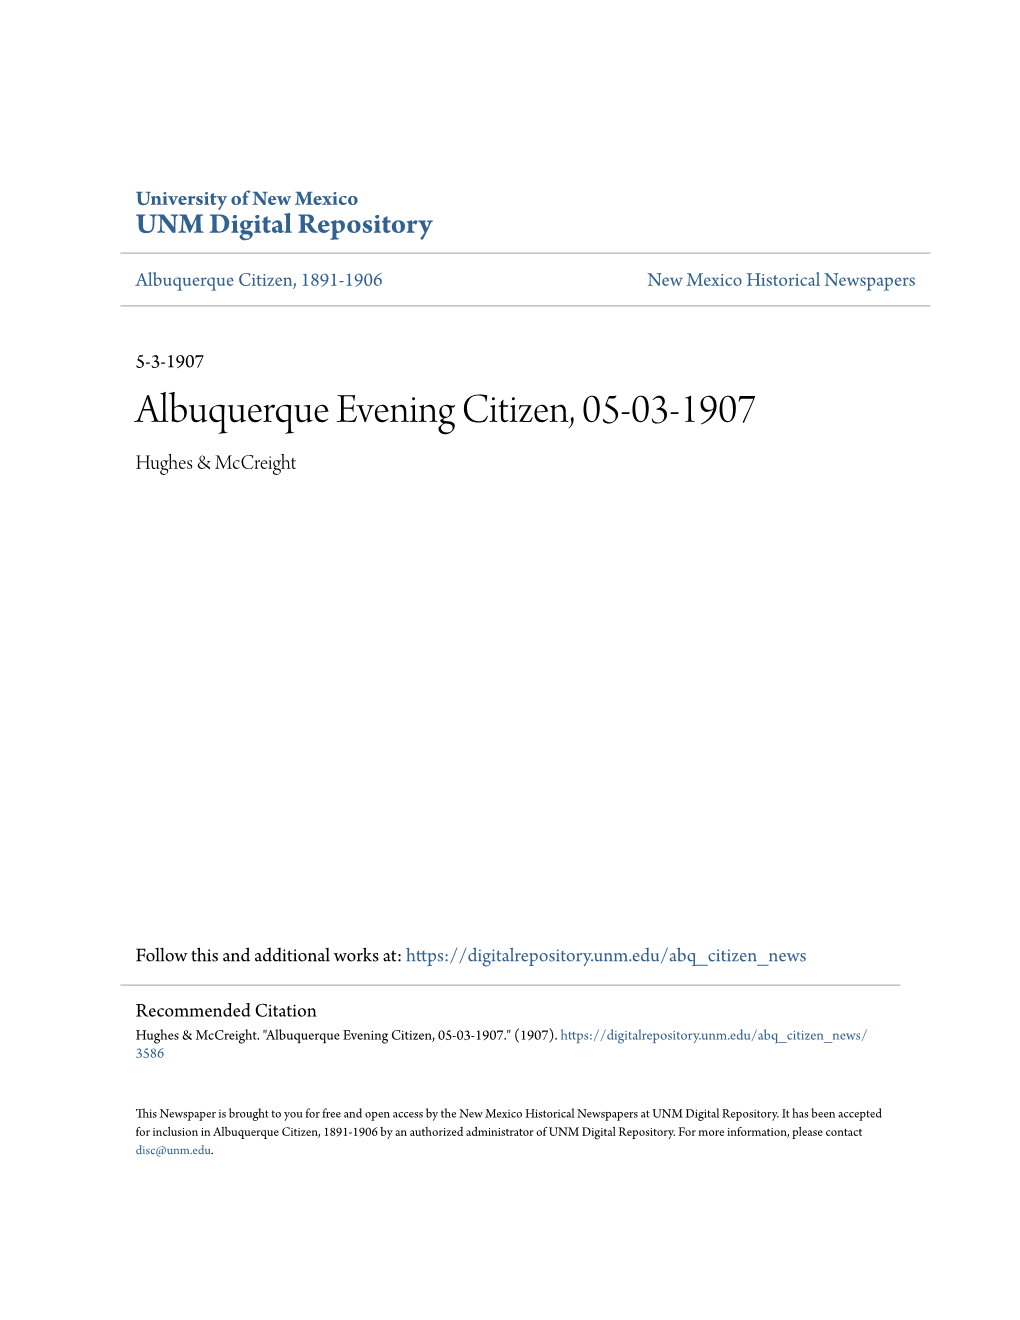 Albuquerque Evening Citizen, 05-03-1907 Hughes & Mccreight